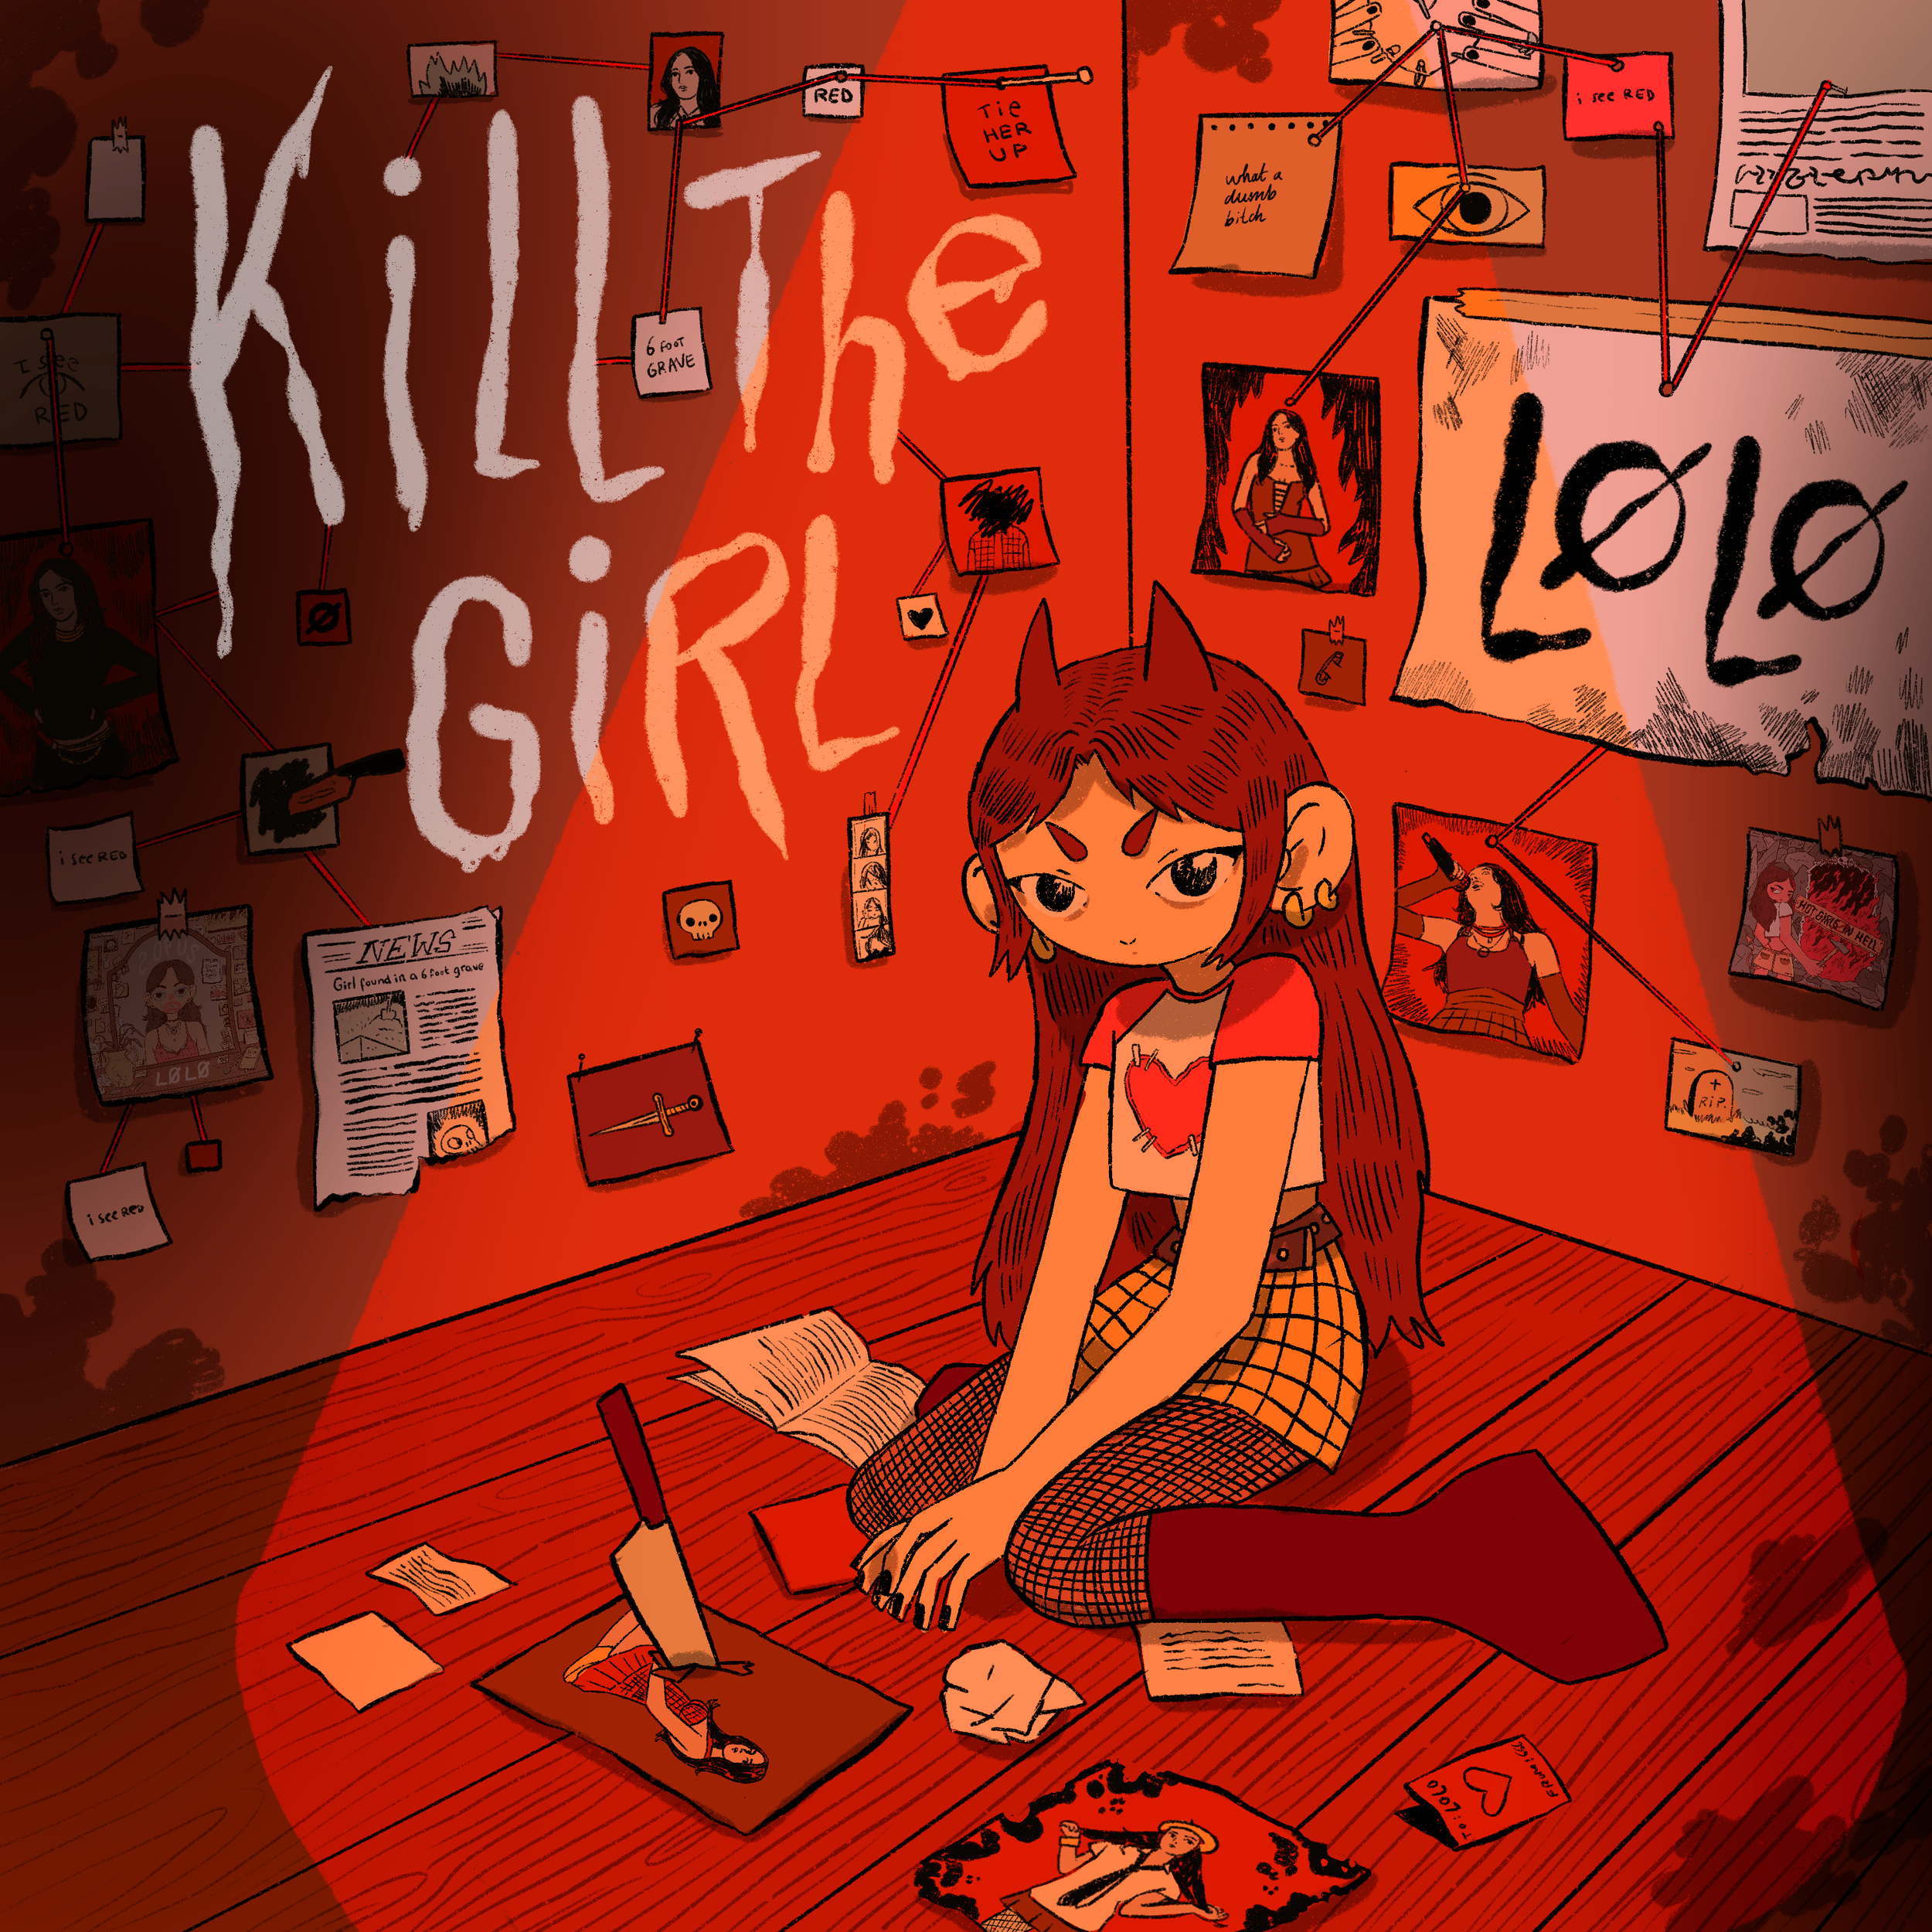 KILL THE GIRL